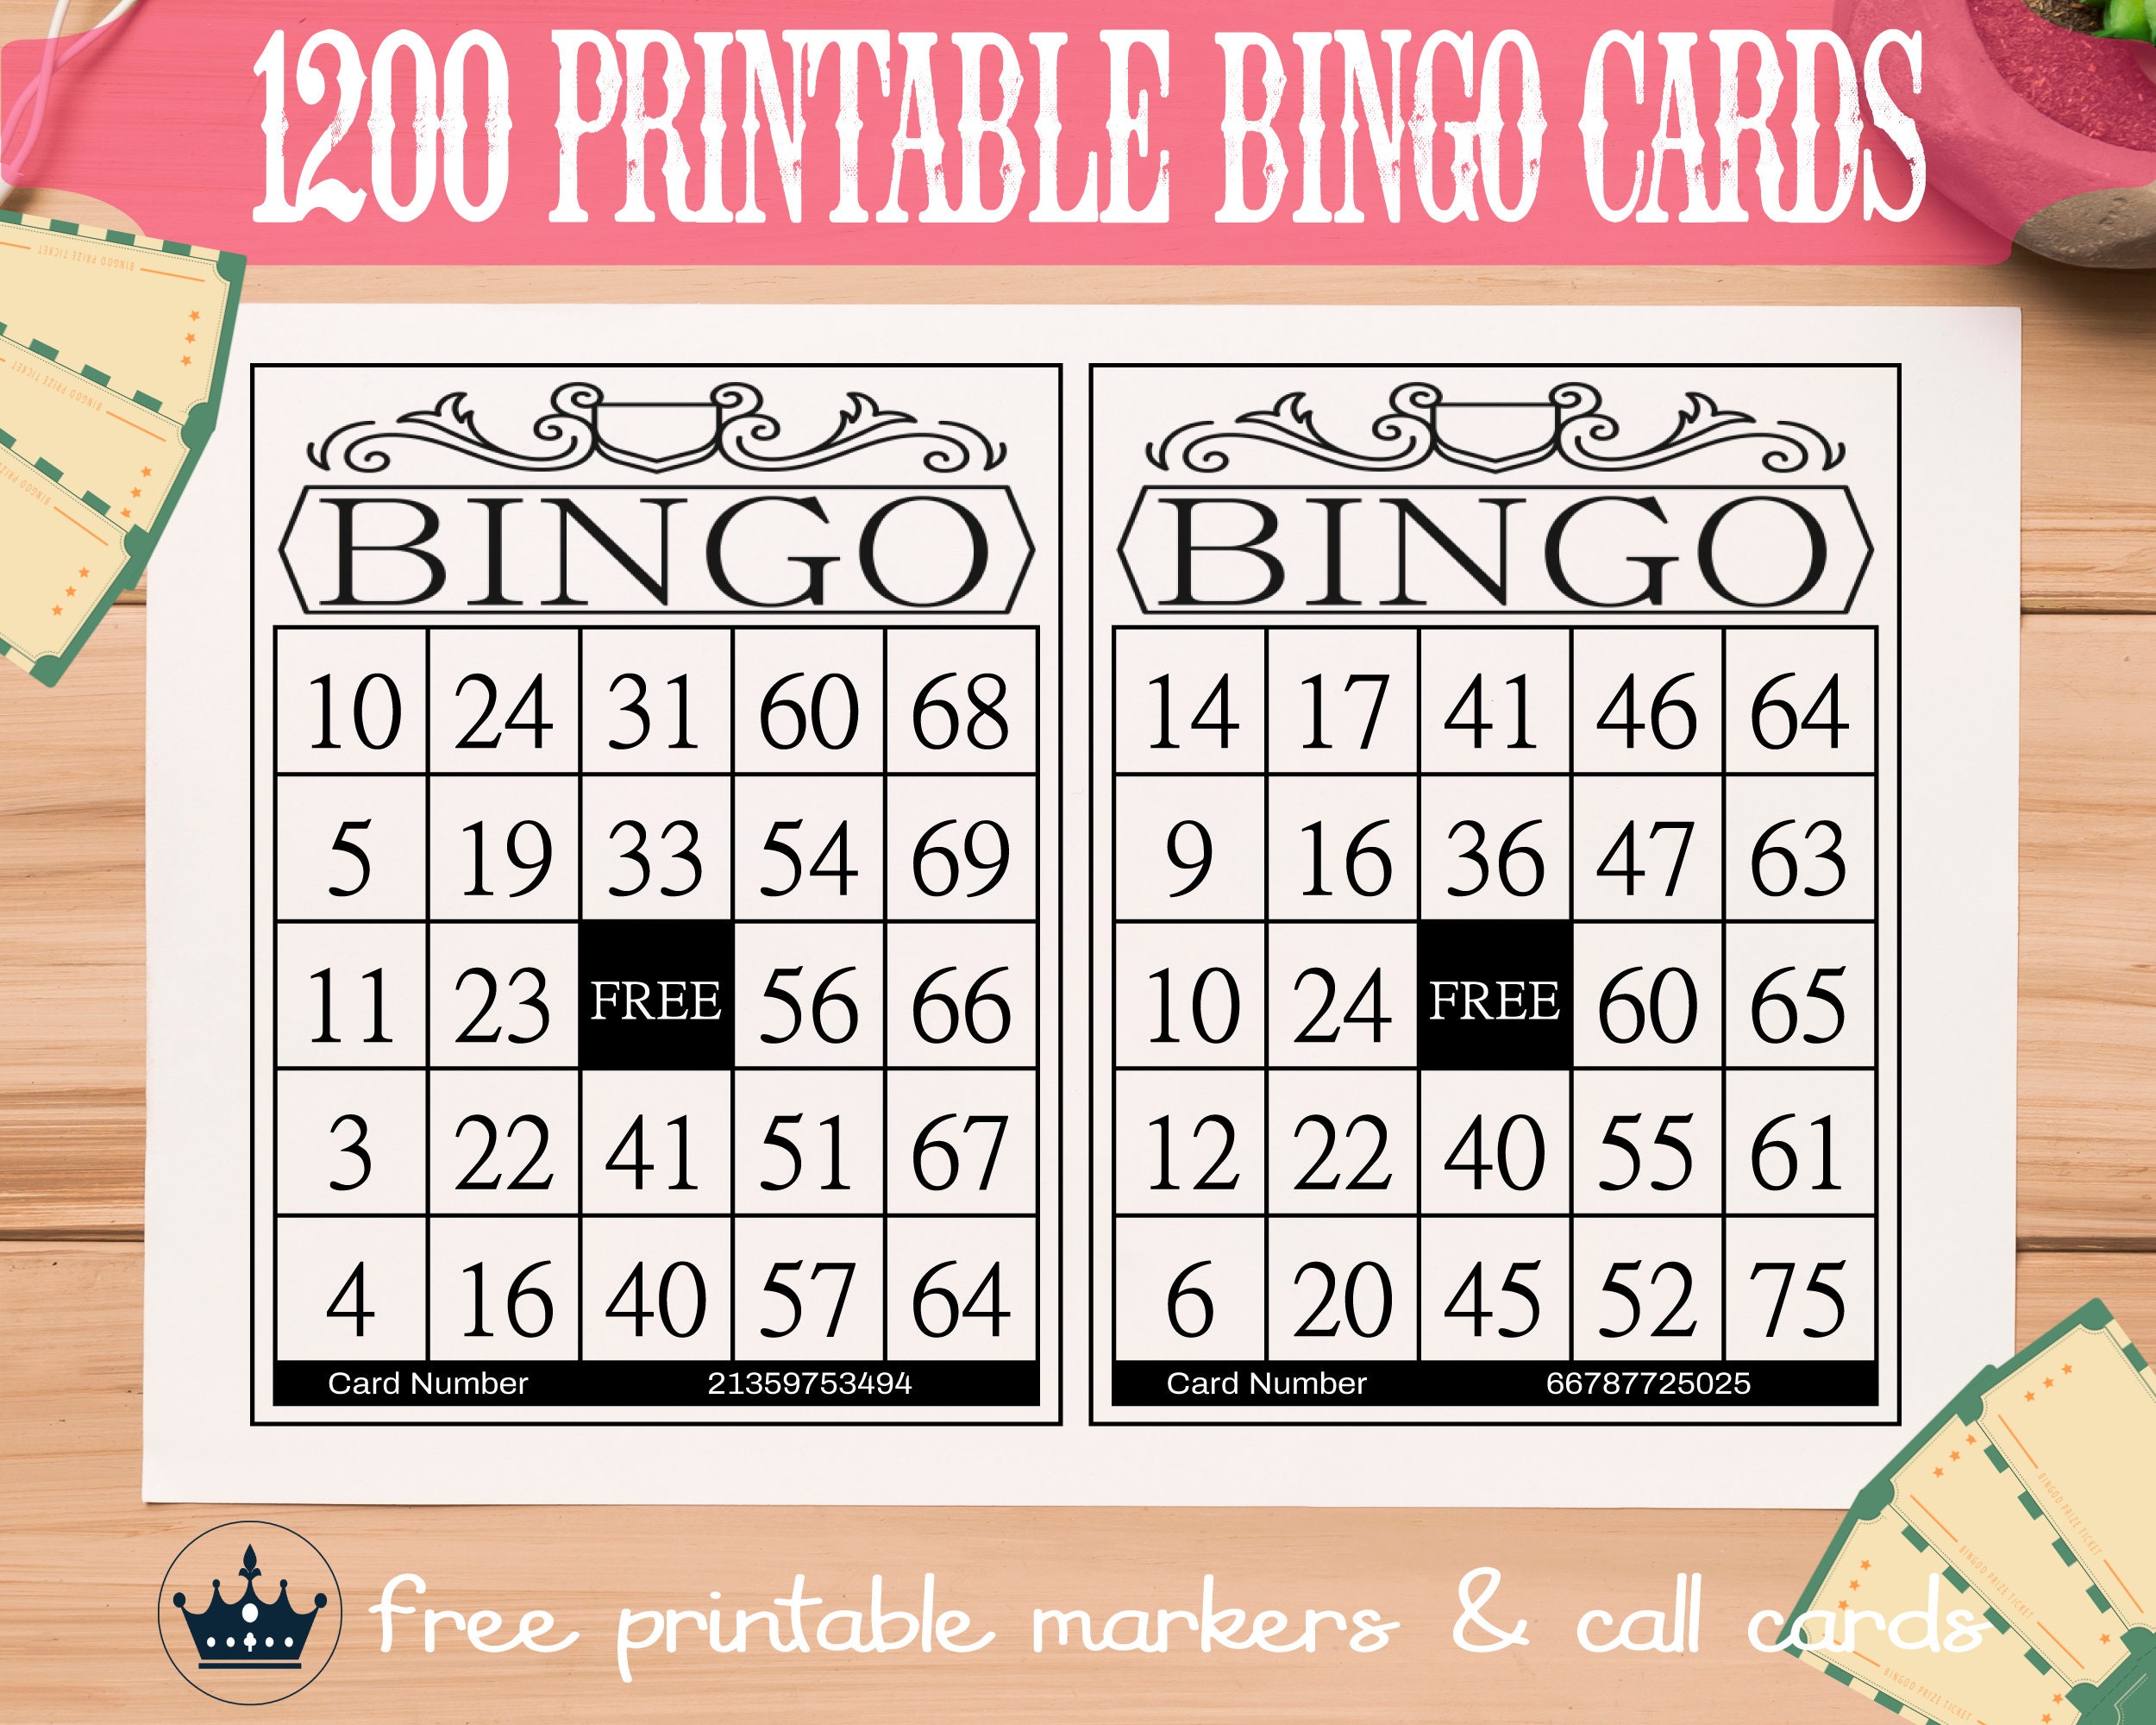 Bonos de bingo gratis